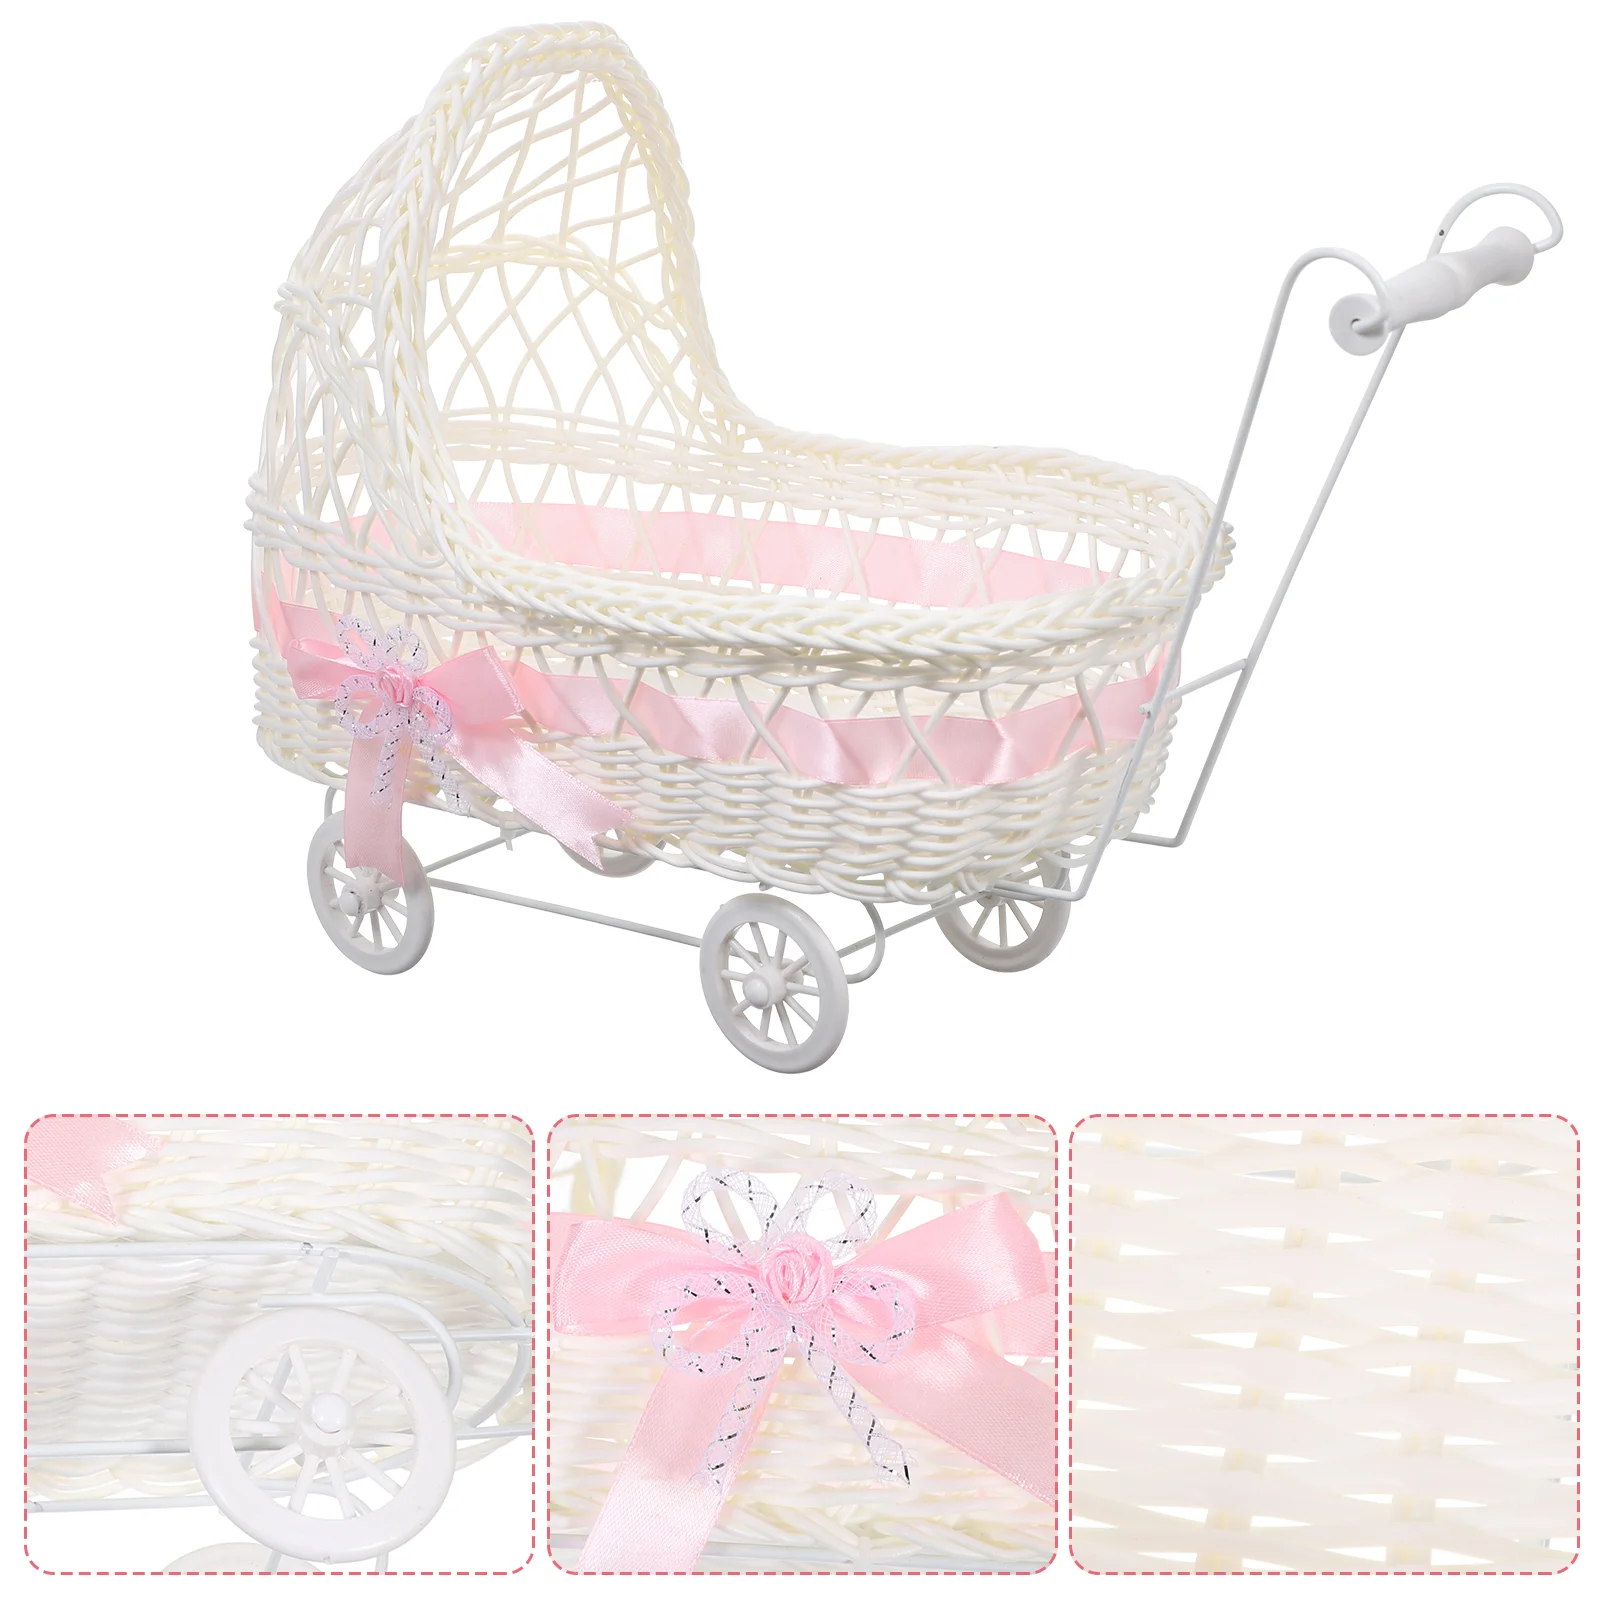 

Trolley Shaped Woven Basket Baby Shower Candy Basket Favors Basket Flower Basket Decor Cart